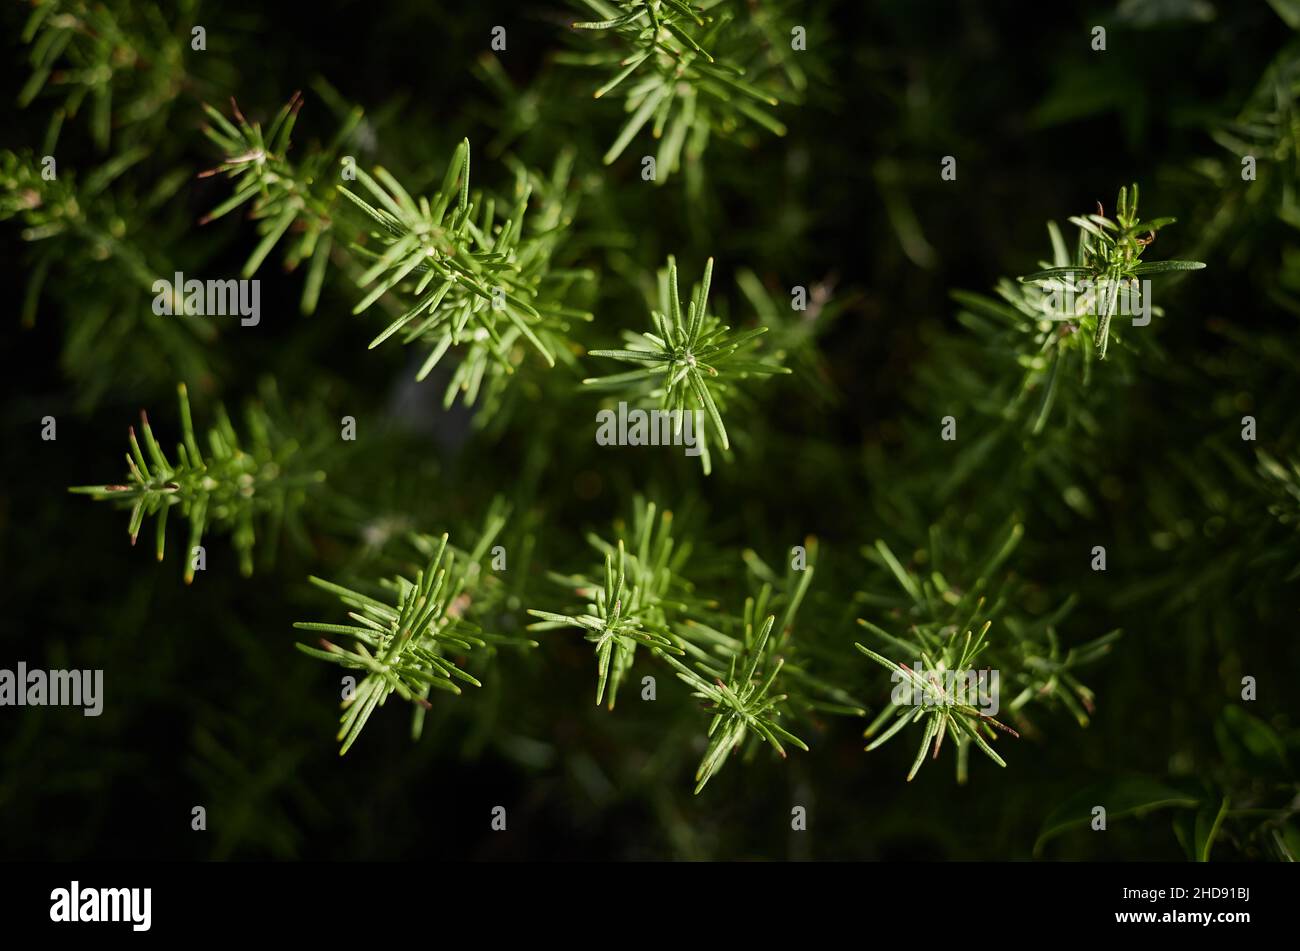 Eine Rosmarin-Pflanze, die von oben fotografiert wurde und die nadelartigen Blätter zeigt Stockfoto